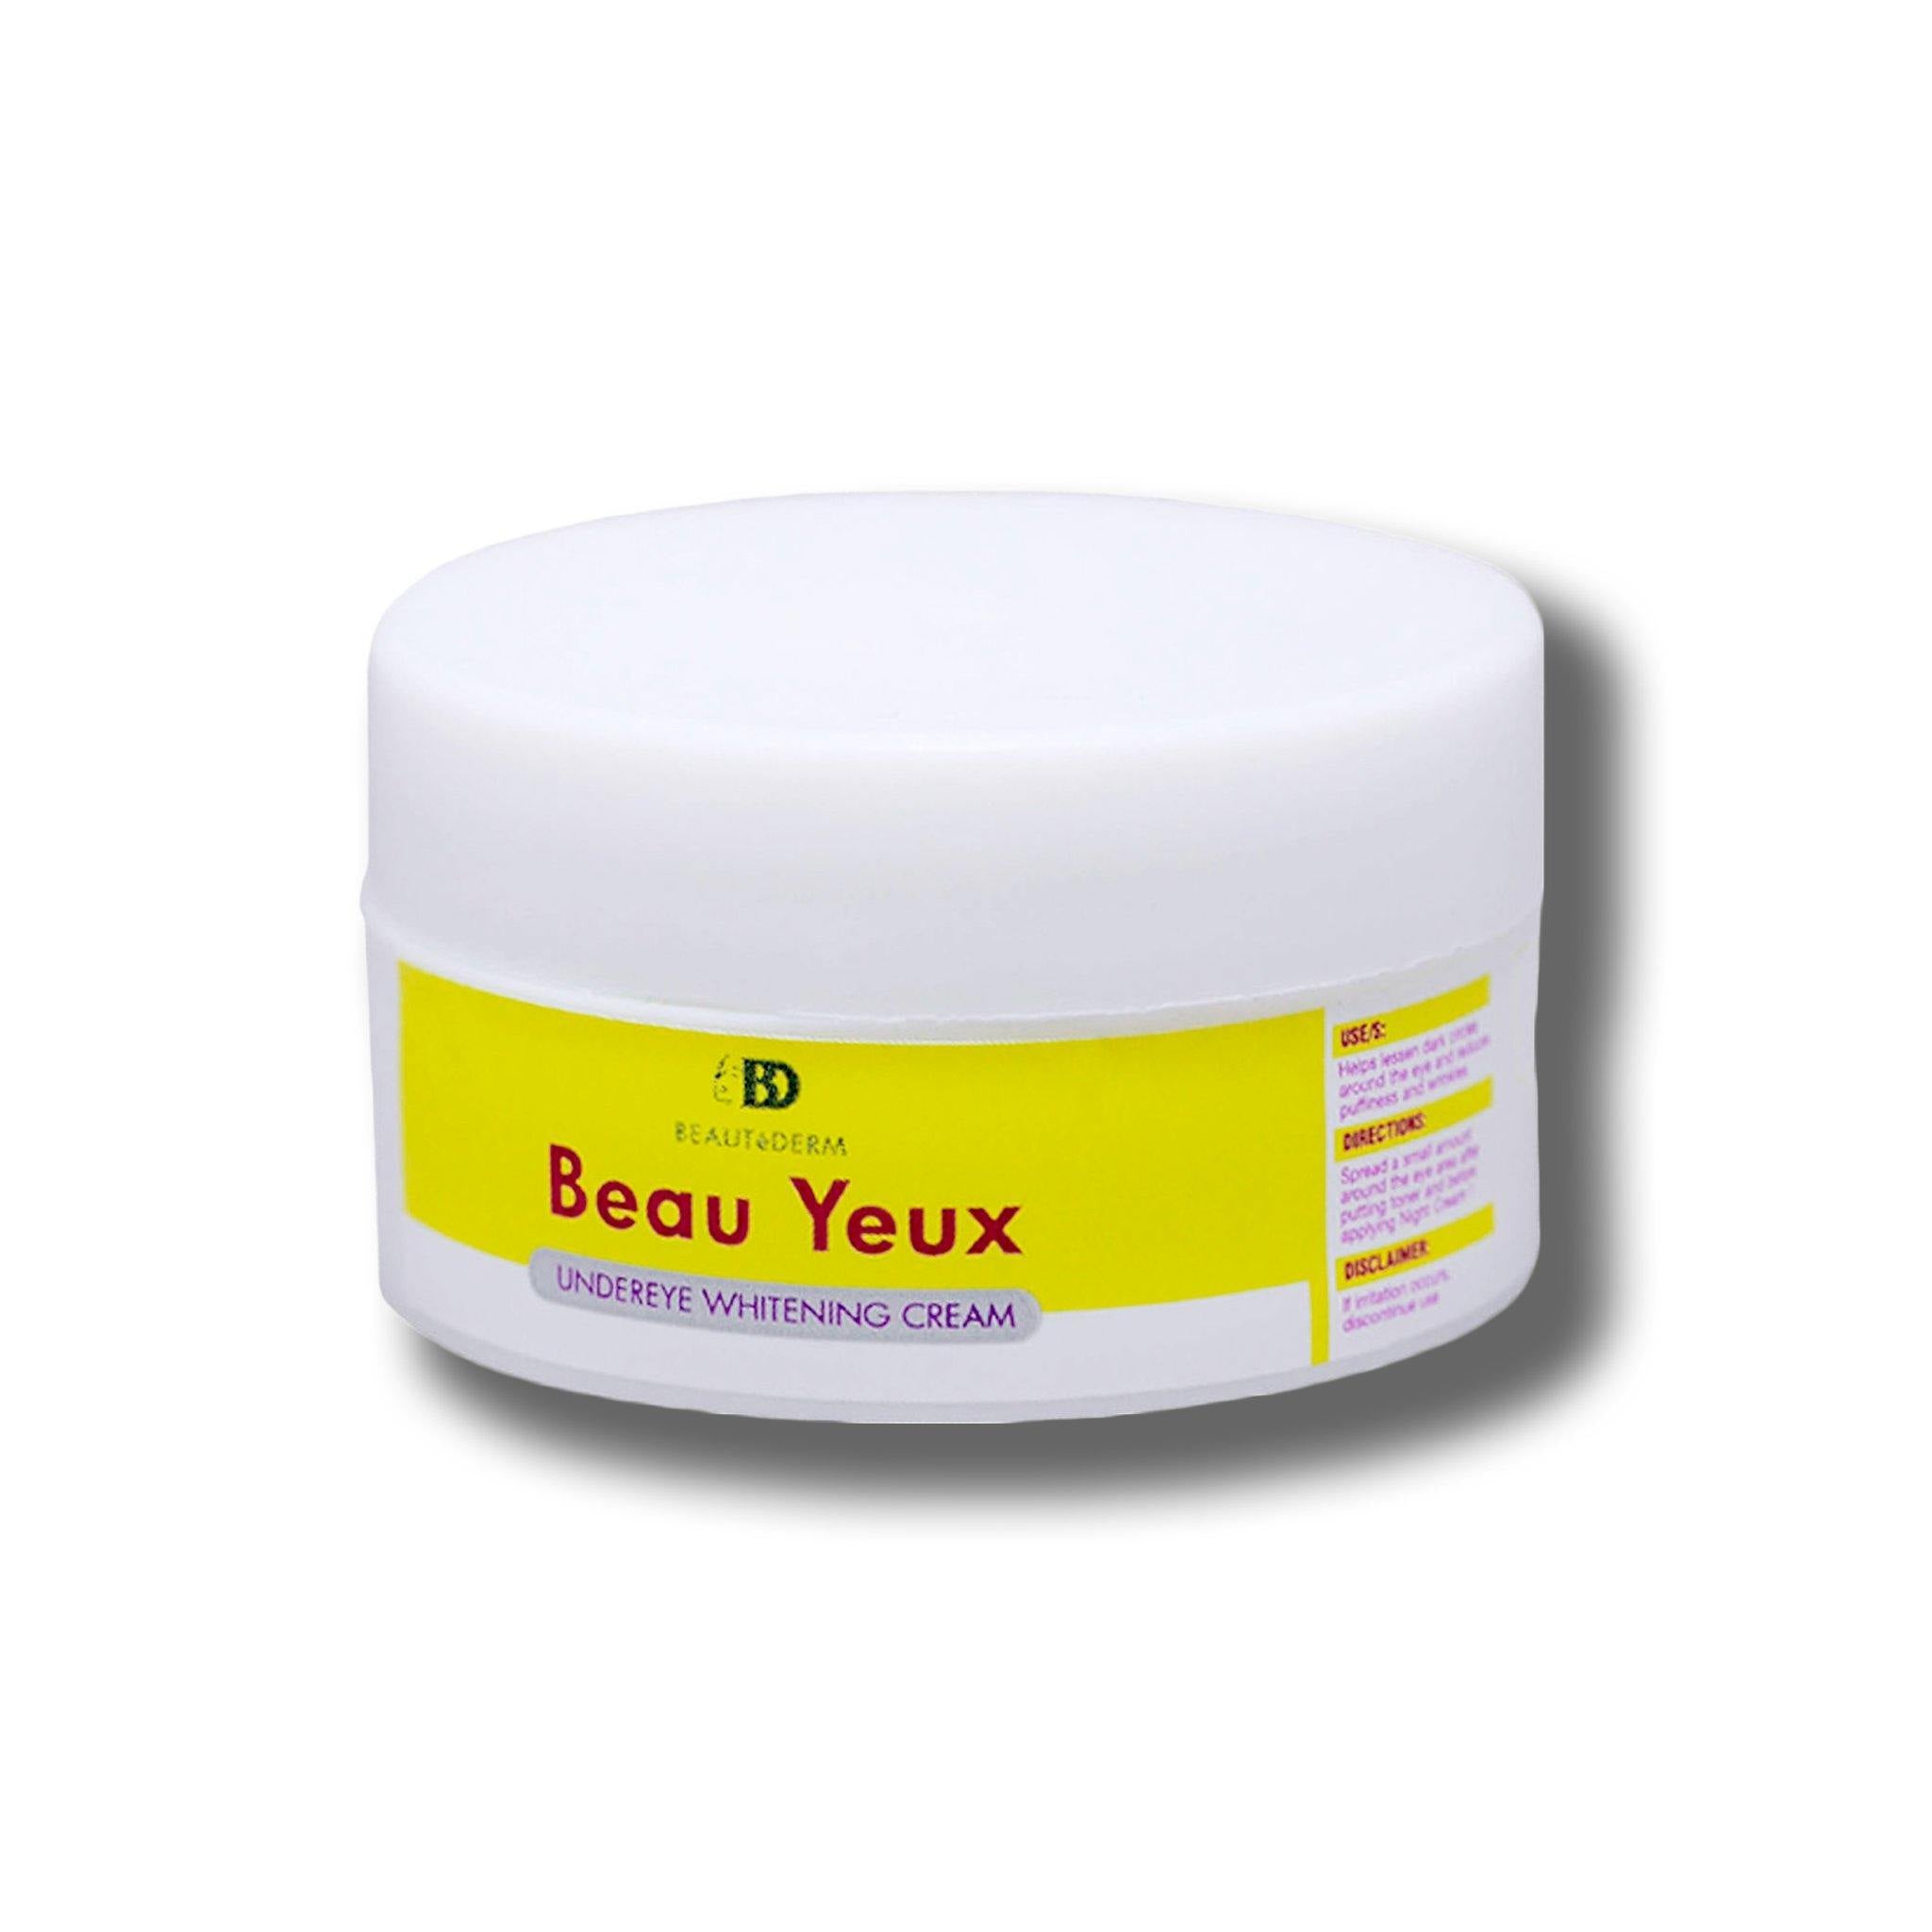 Beautederm Beau Yeux, Undereye Whitening Cream, 10g